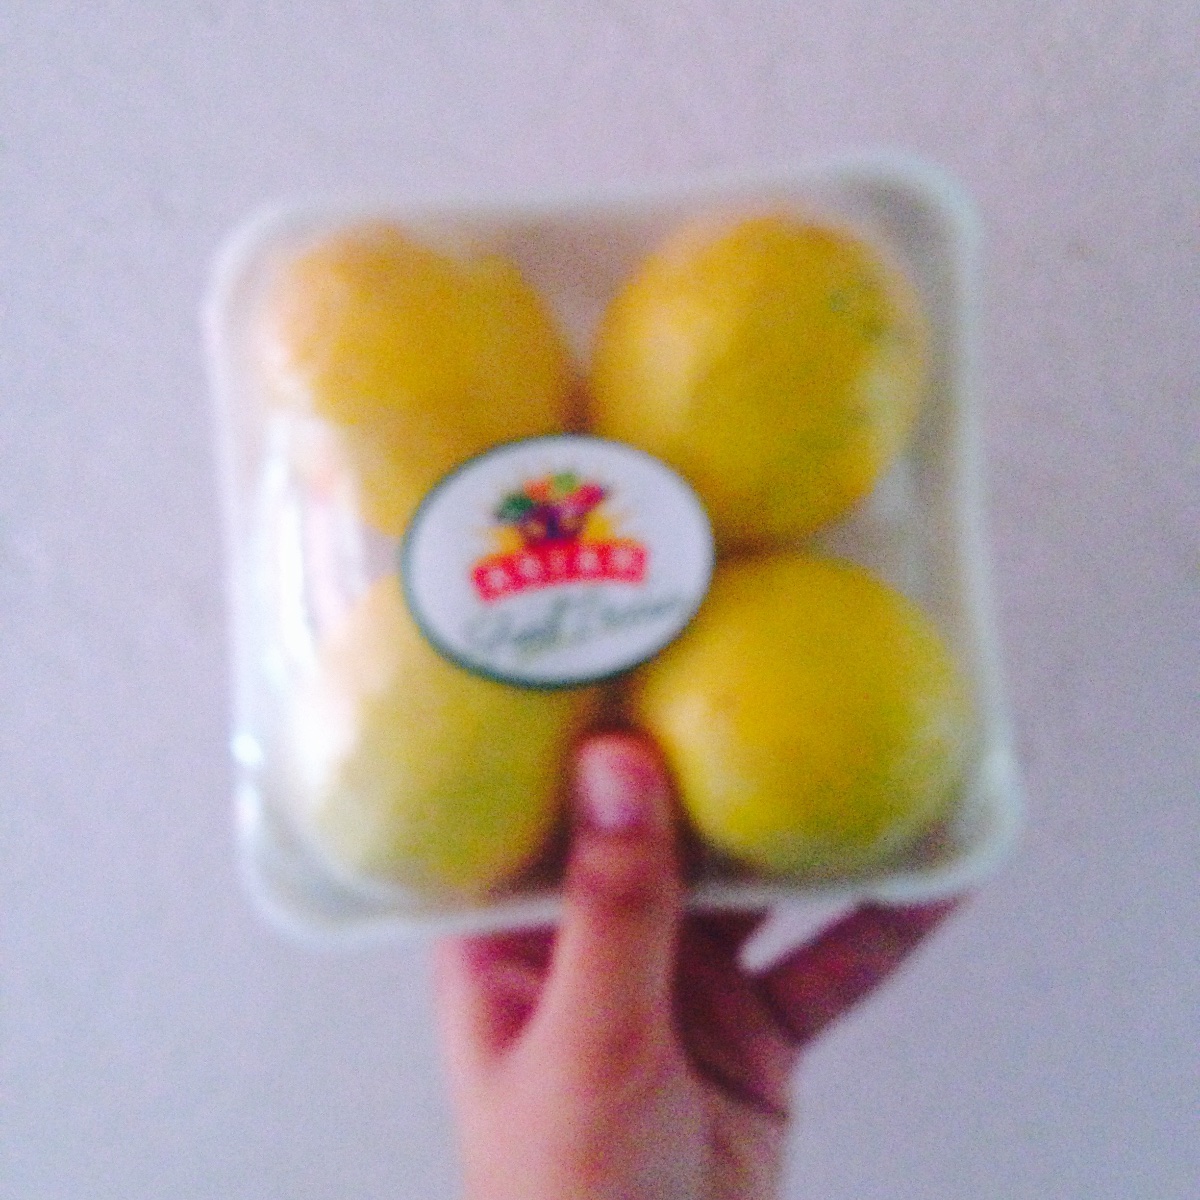 Fruits lemons four pieces